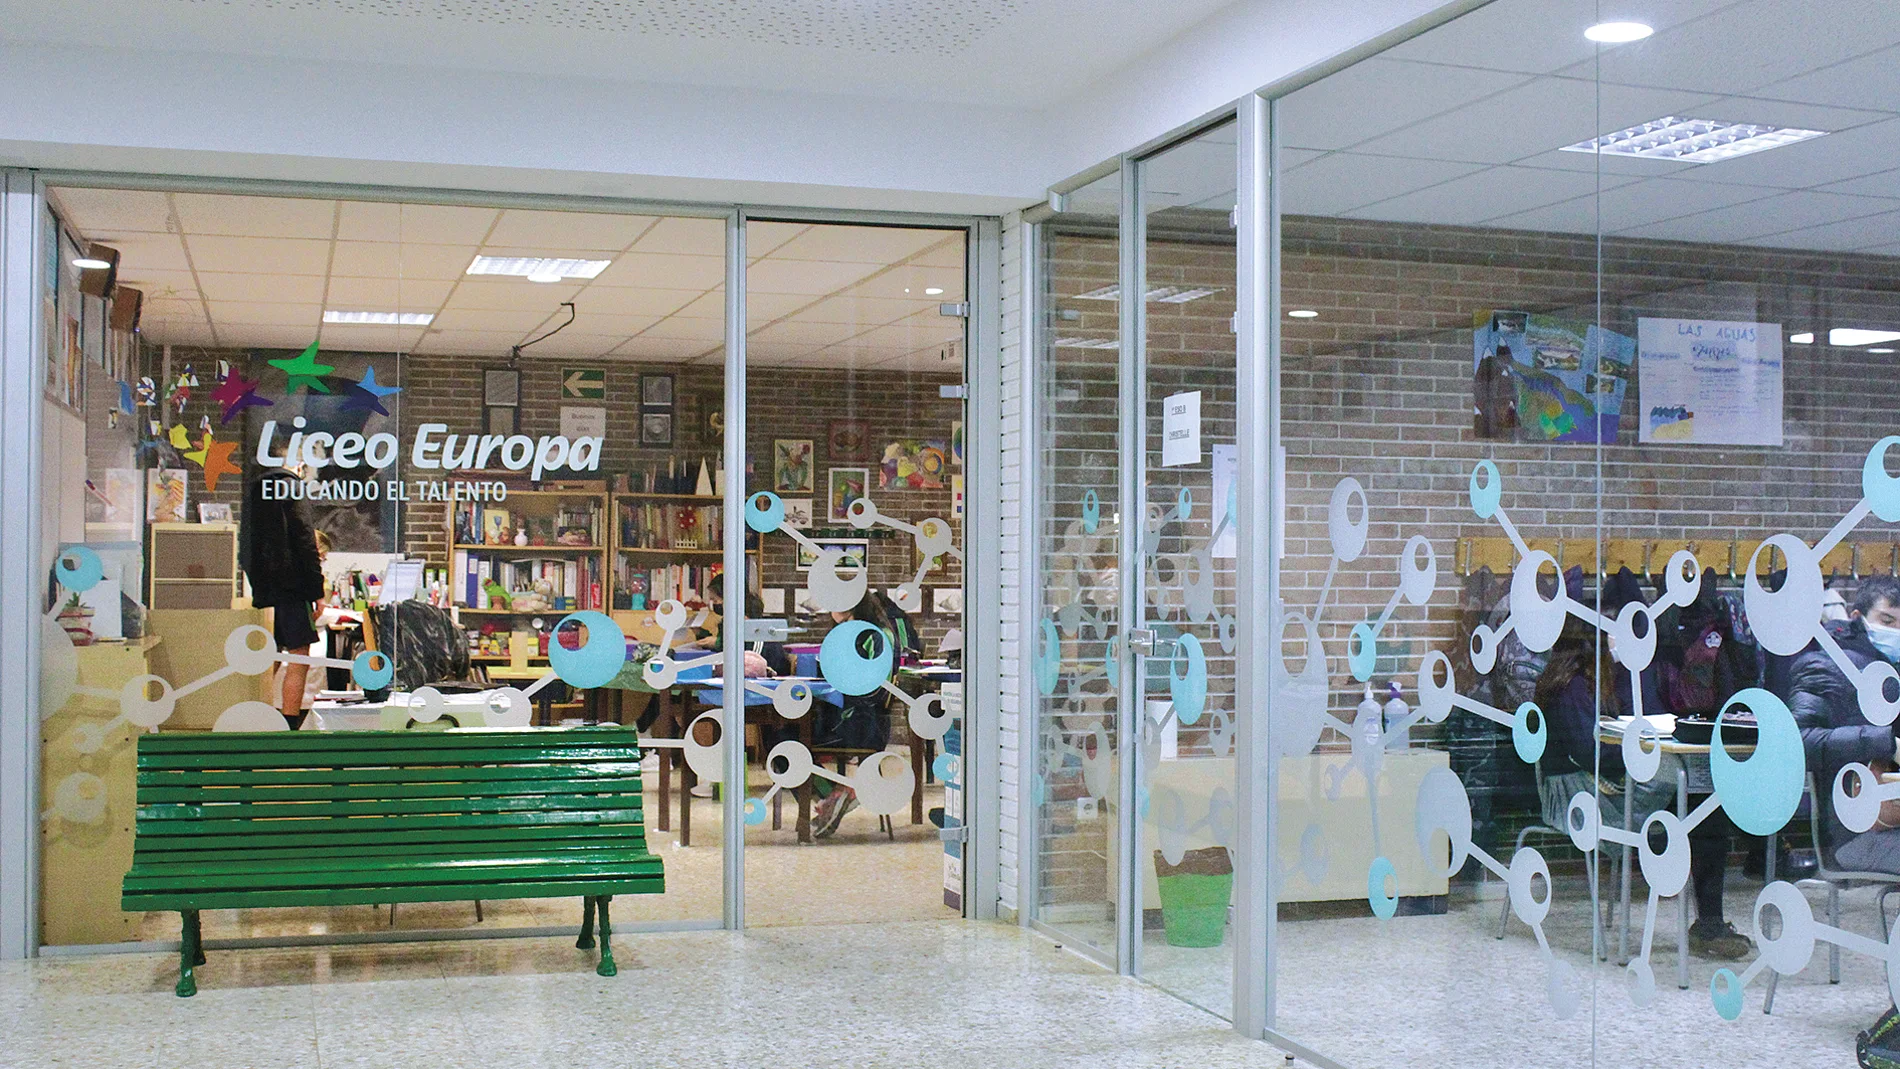 Entre 2015 y 2018, Liceo Europa realizó una renovación completa de espacios en Educación Infantil y Primaria, adaptándolos a las metodologías pedagógicas más avanzadas.